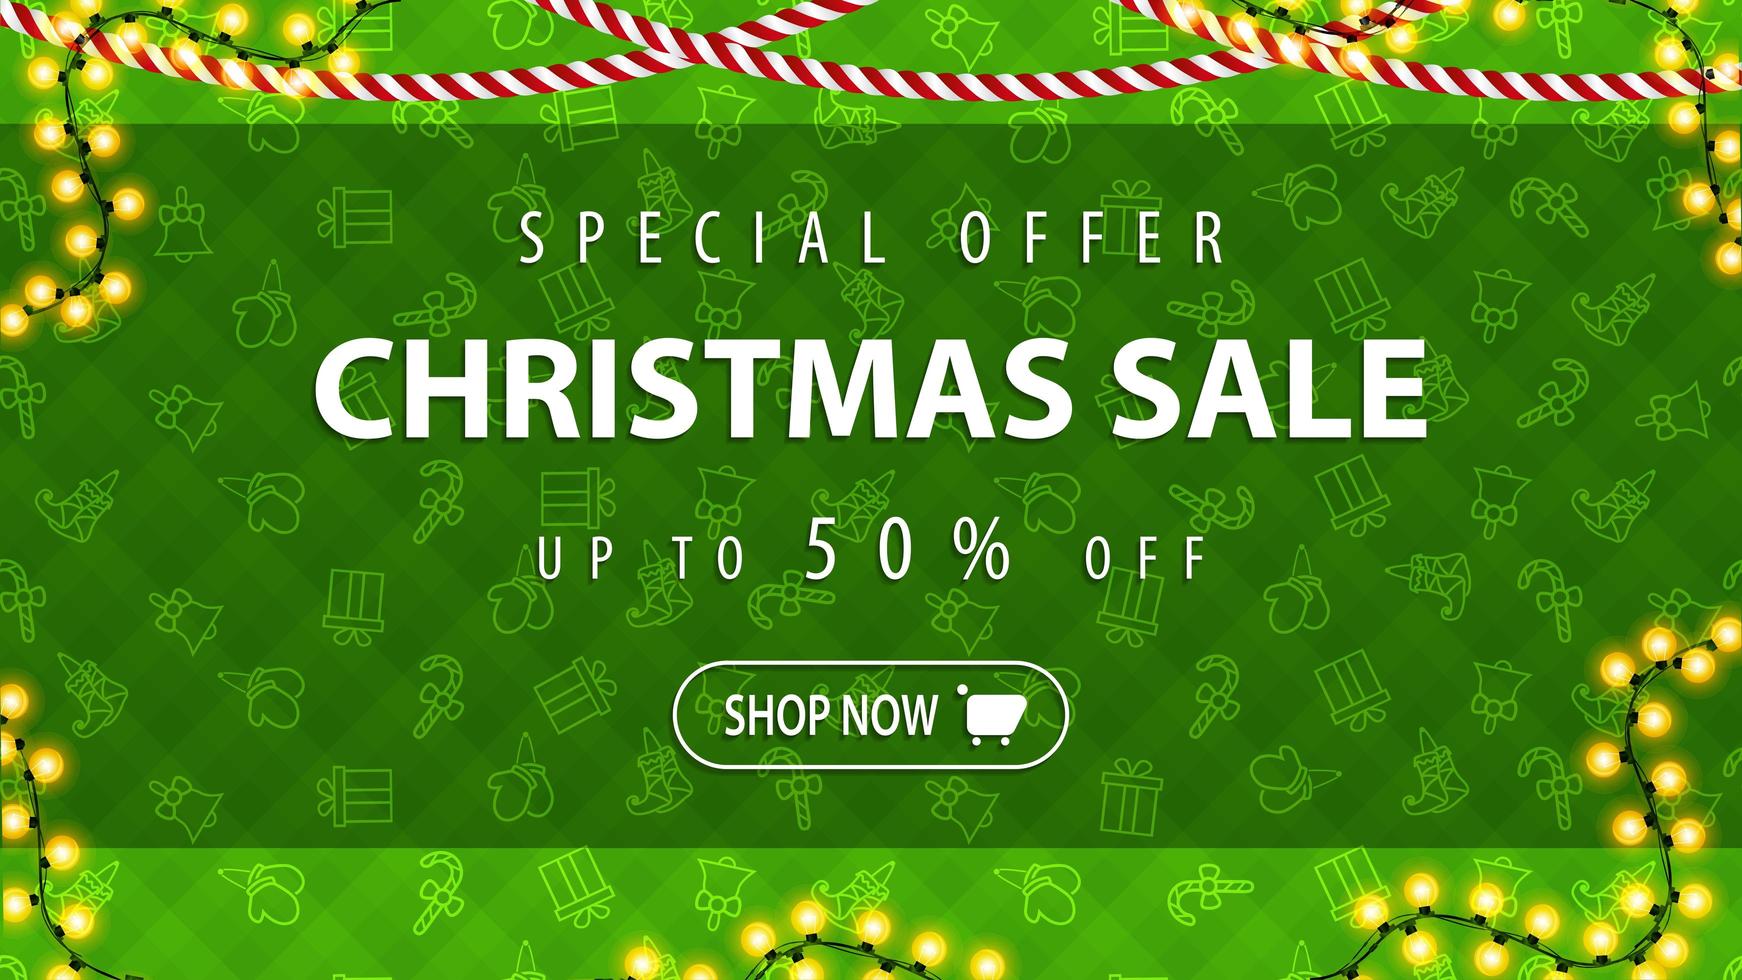 speciale aanbieding, kerstuitverkoop, tot 50 korting, groene banner met groen patroon met wanten, geschenkdoosjes, bellen en elfenlaarzen. vector